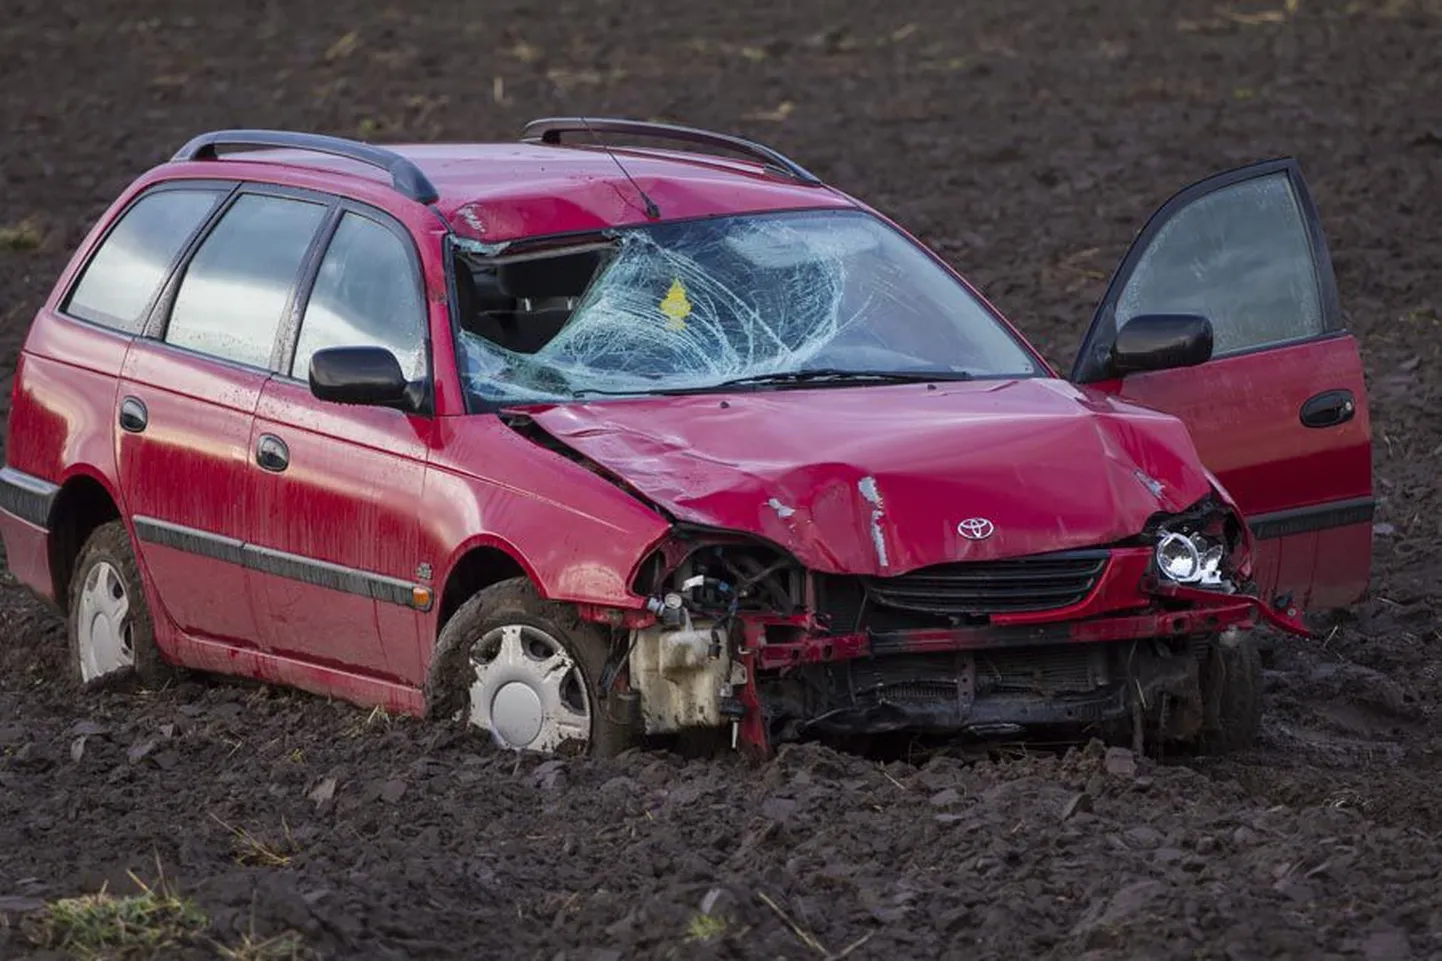 Õnnetuspaigast umbes 500 meetrit eemal põllul oli lömmis kapotiga punane Toyota Avensis.